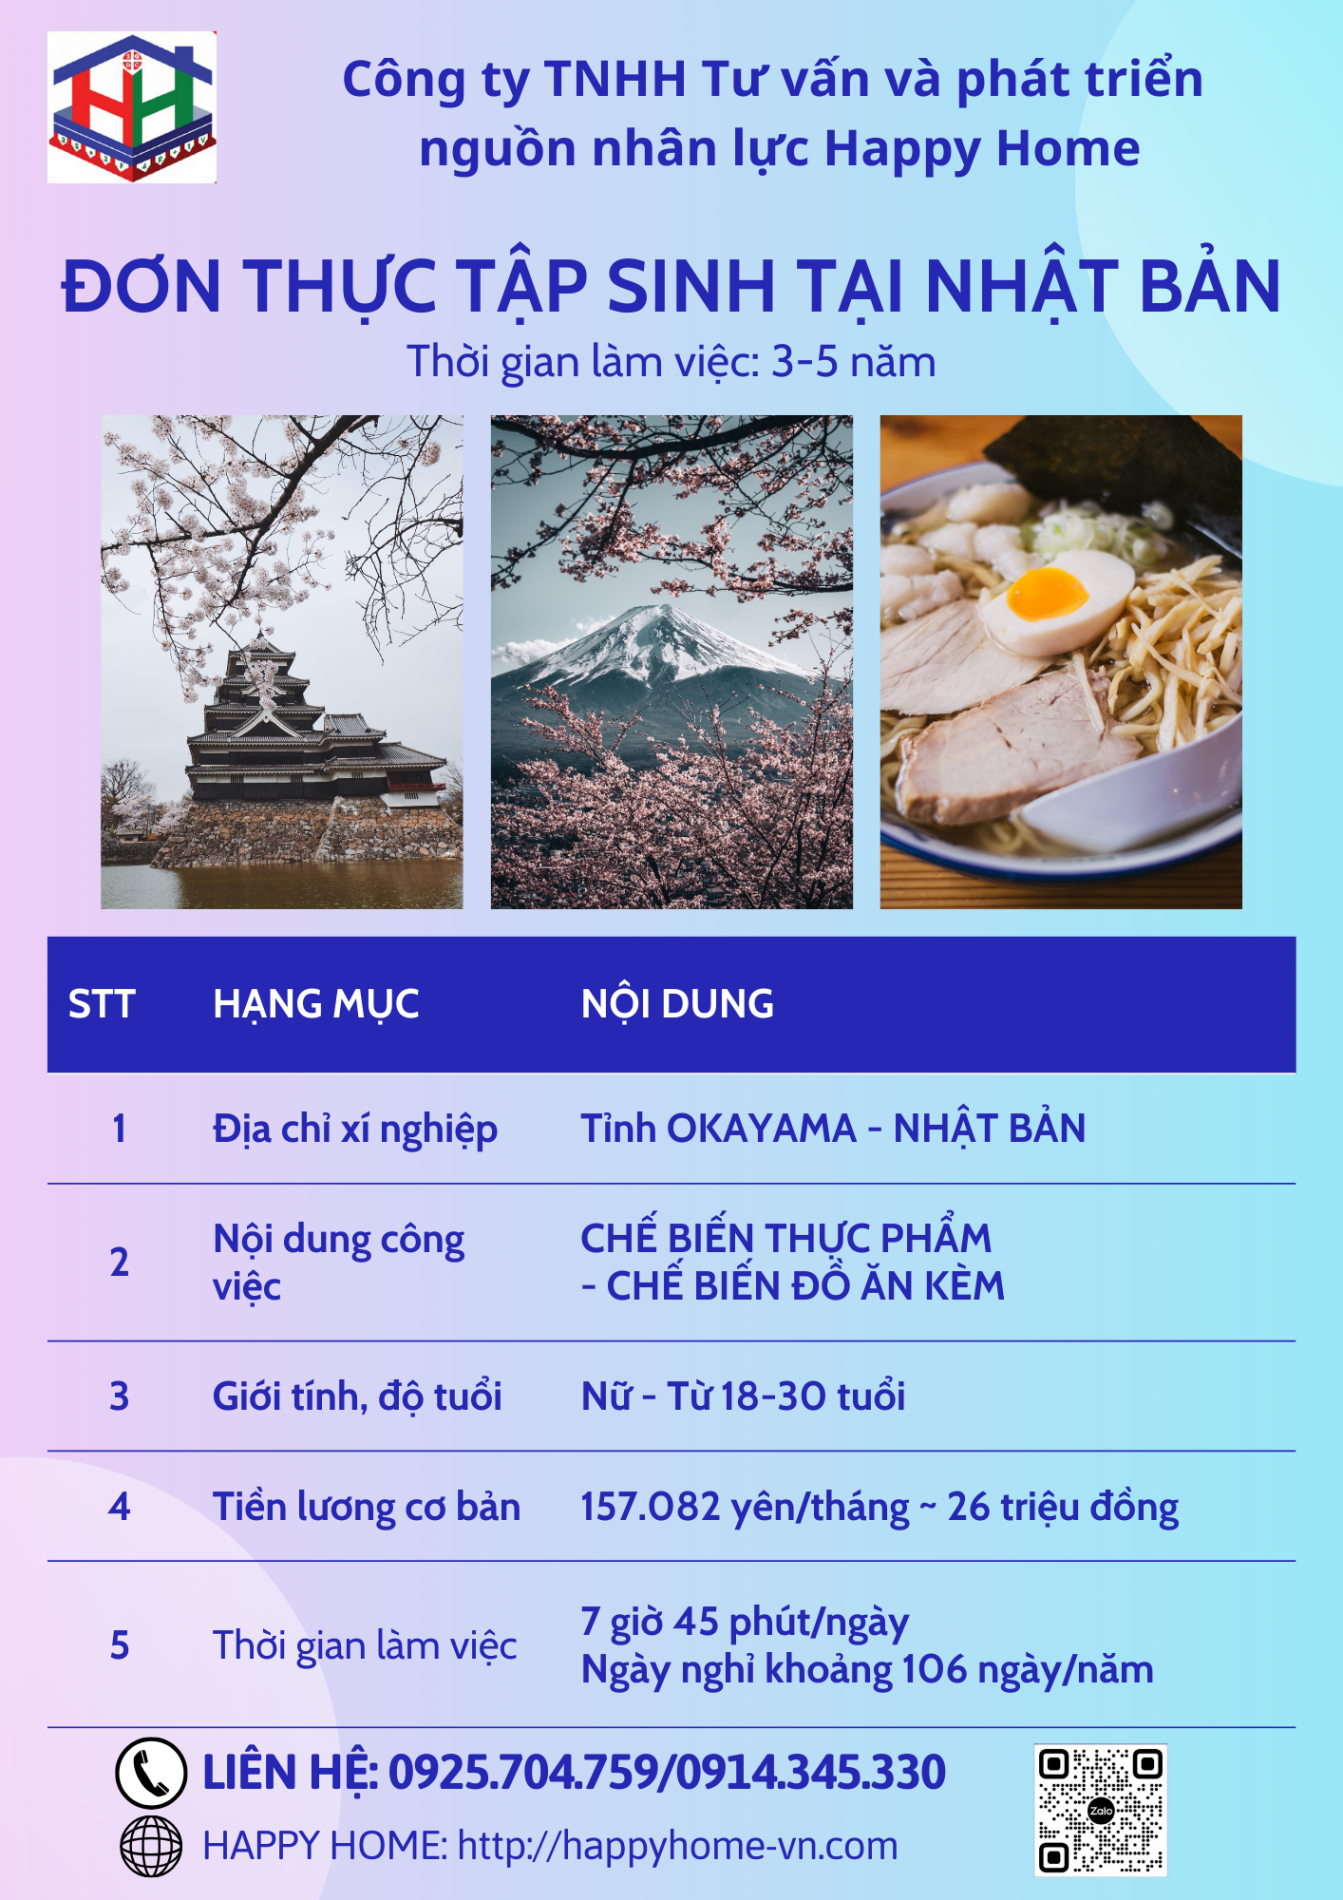 don_thuc_tap_sinh_o_nhat_ban